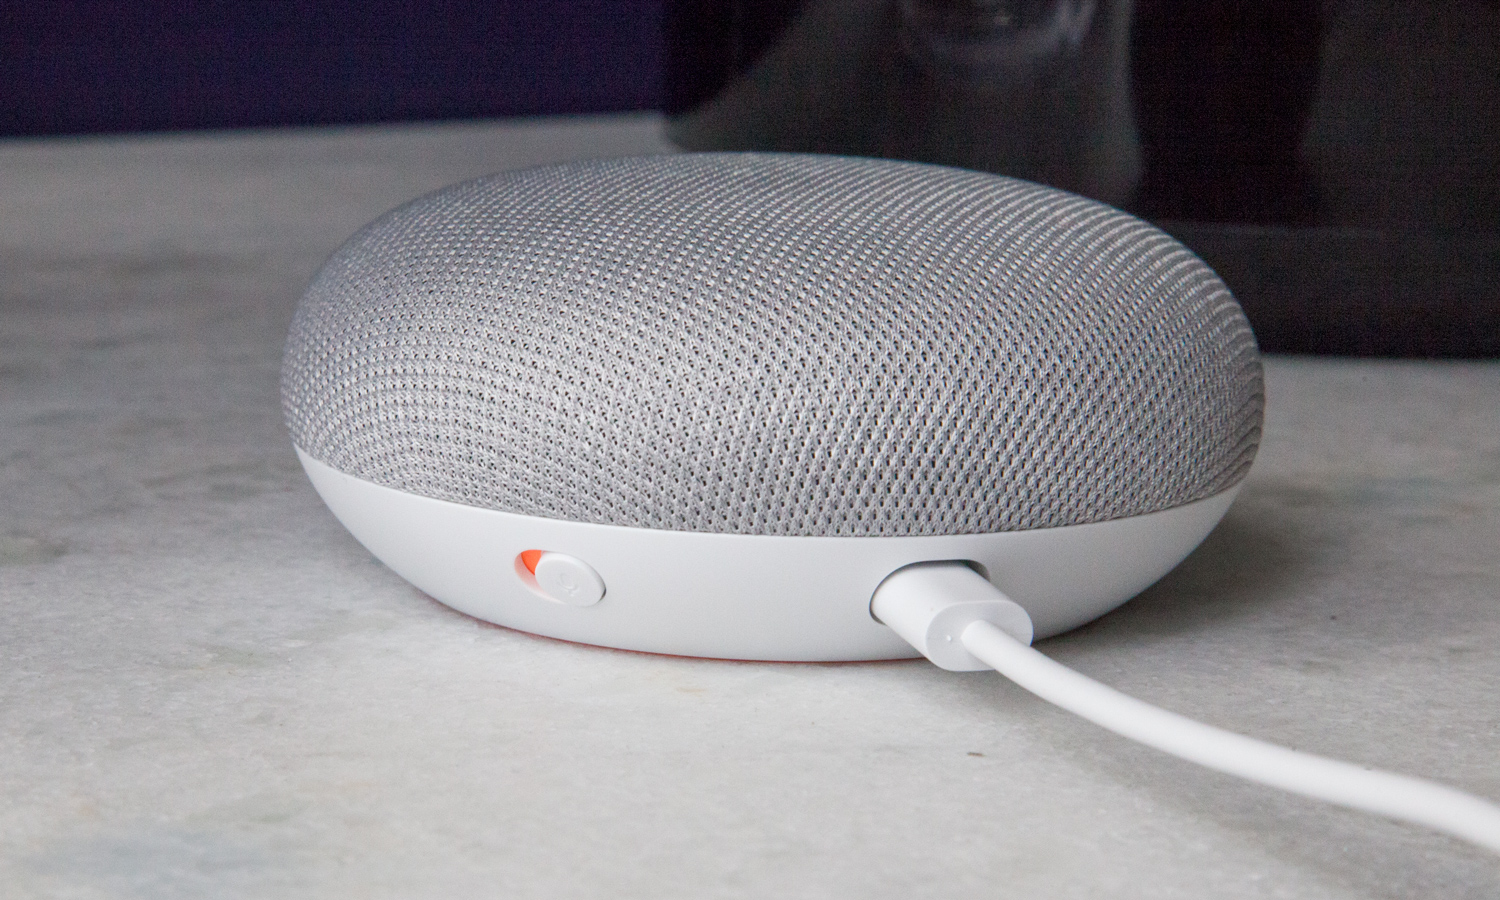 Echo Dot vs. Google Home Mini